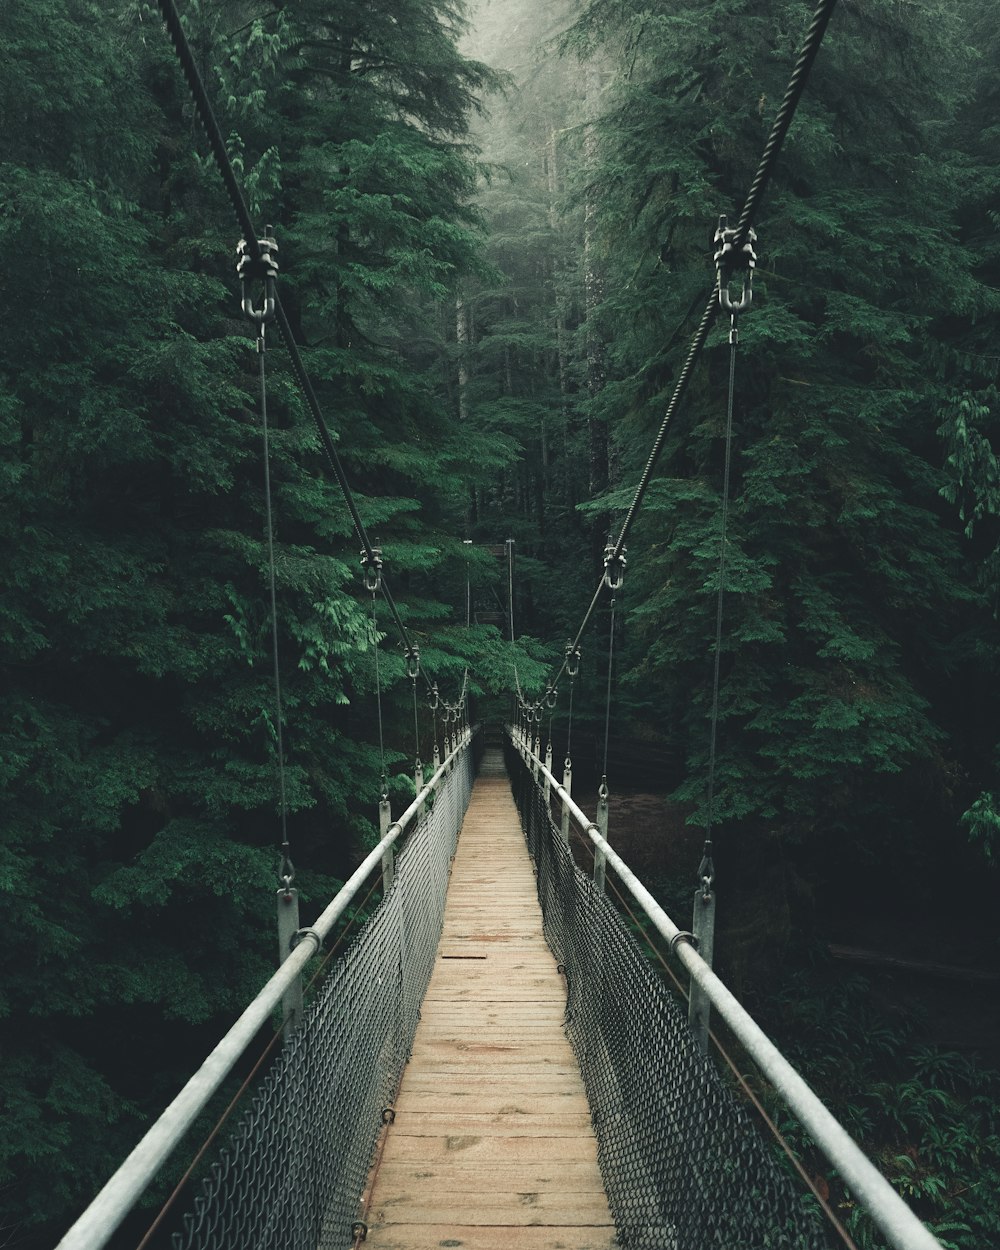 fotografia em perspectiva única da ponte entre árvores